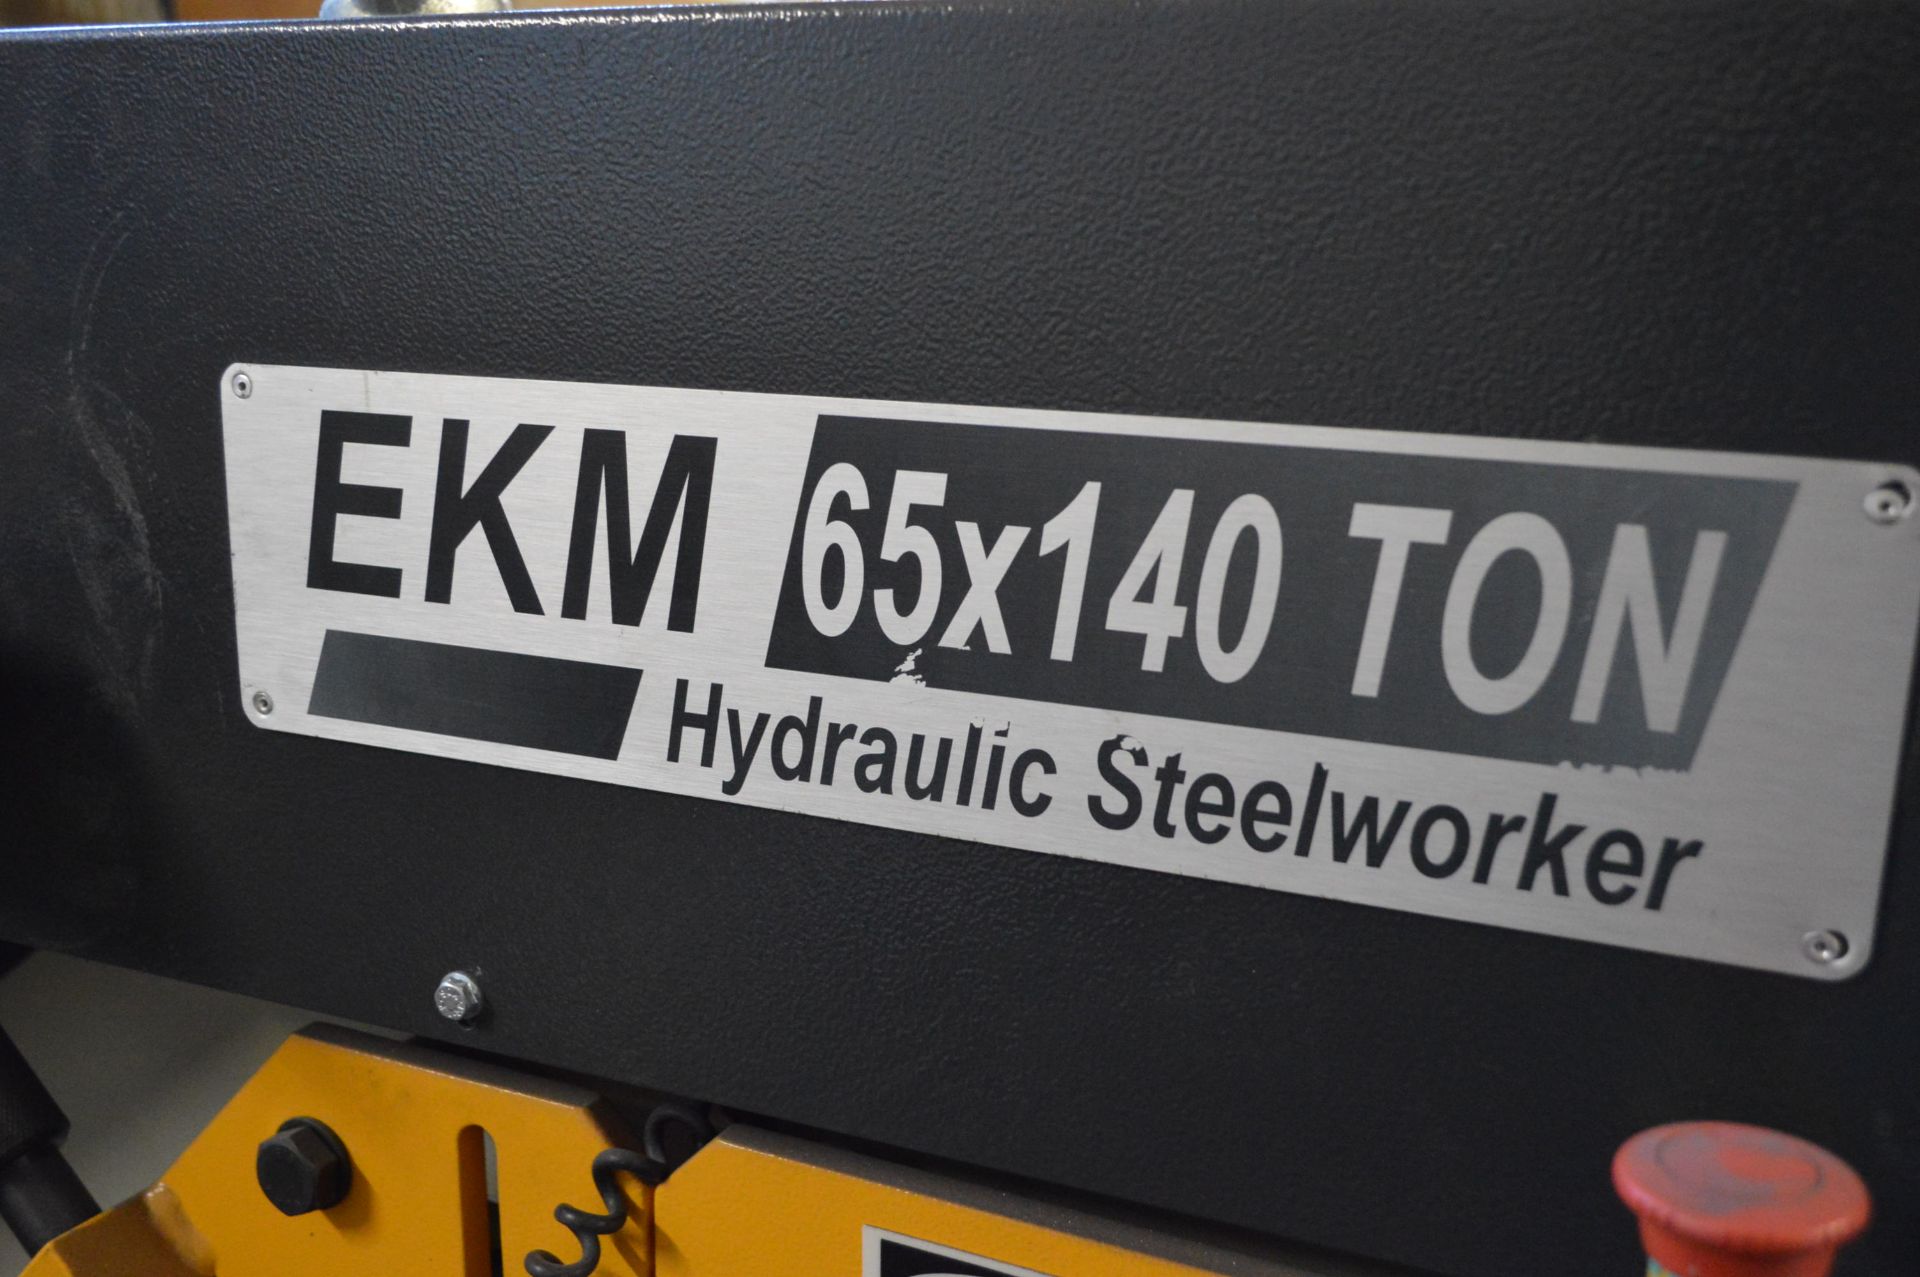 Ermaksan EKM 65 x 140 tonne HYDRAULIC STEELWORKER, - Image 7 of 13